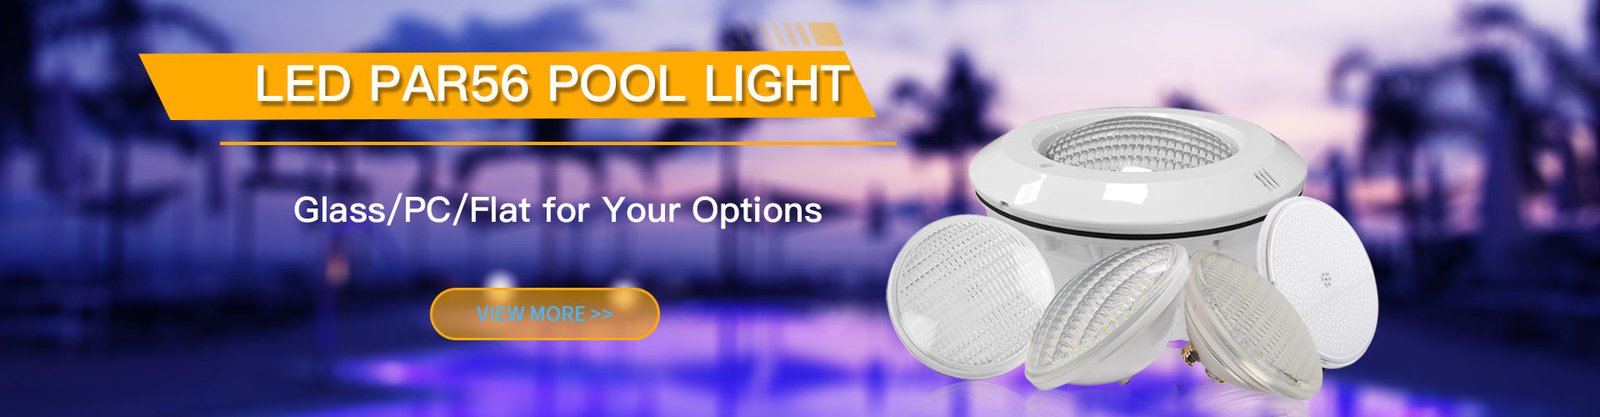 Oświetlenie basenowe LED PAR56